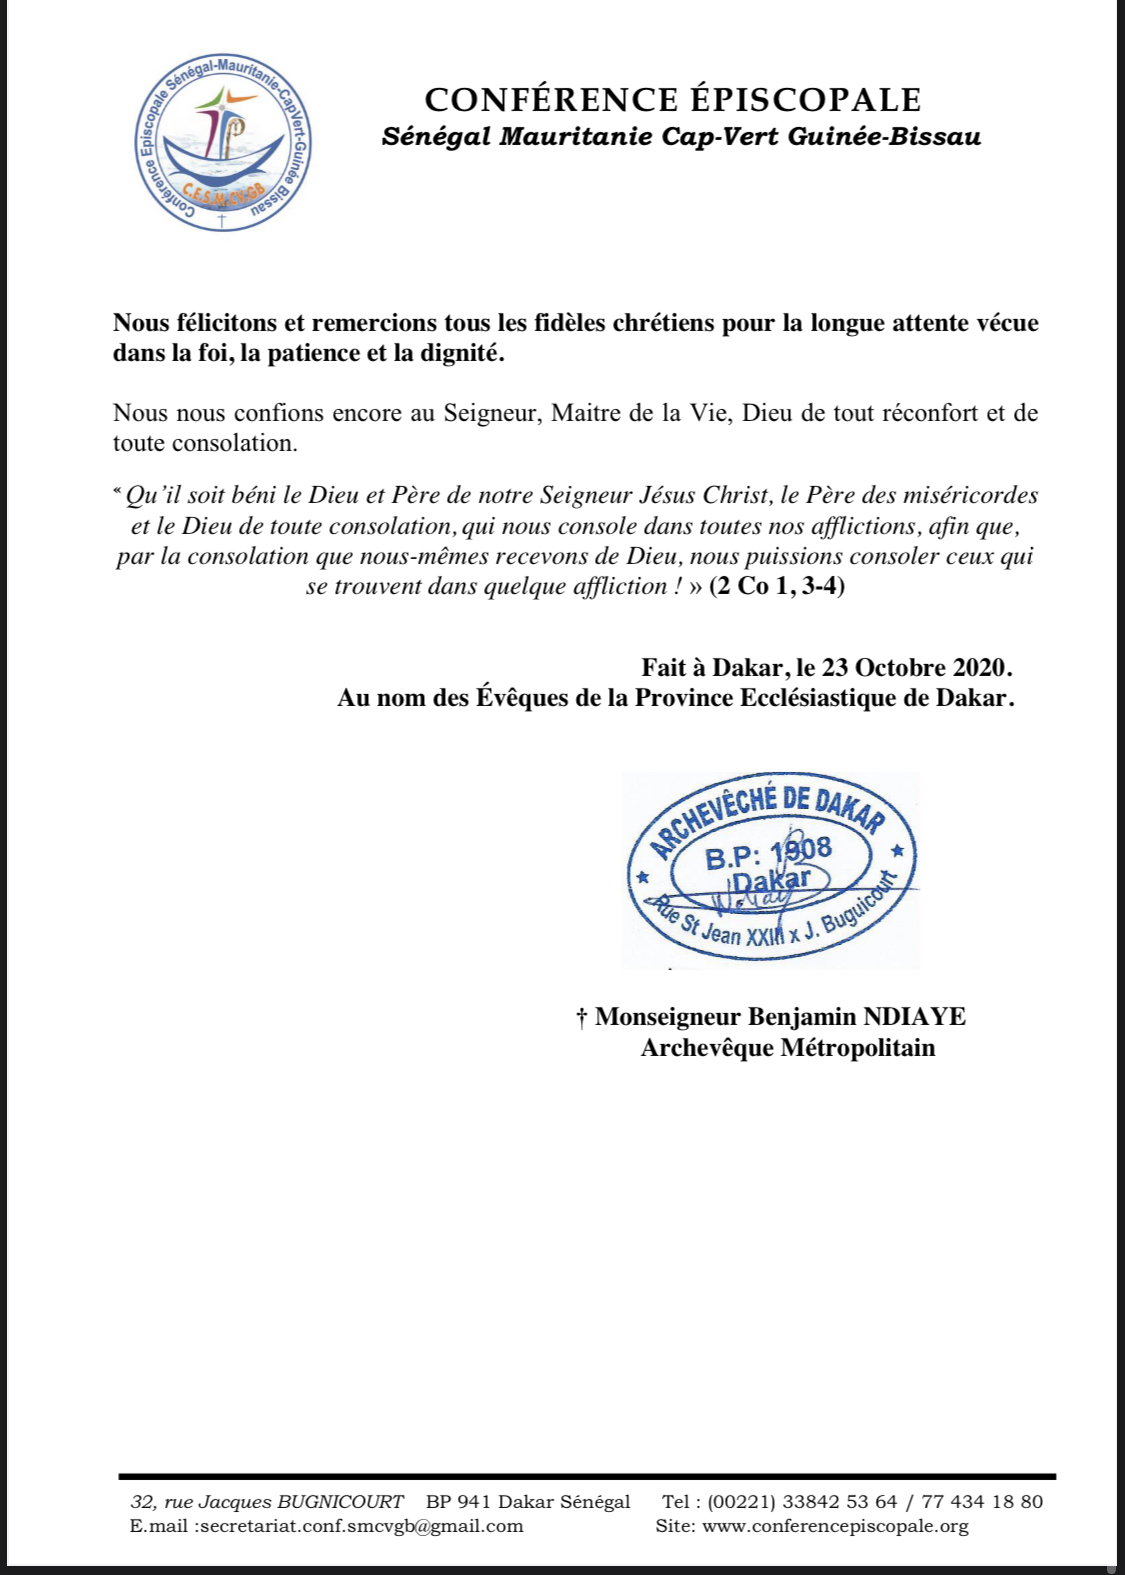 La Province ecclésiastique de Dakar annonce la réouverture des Eglises à partir du 1er novembre